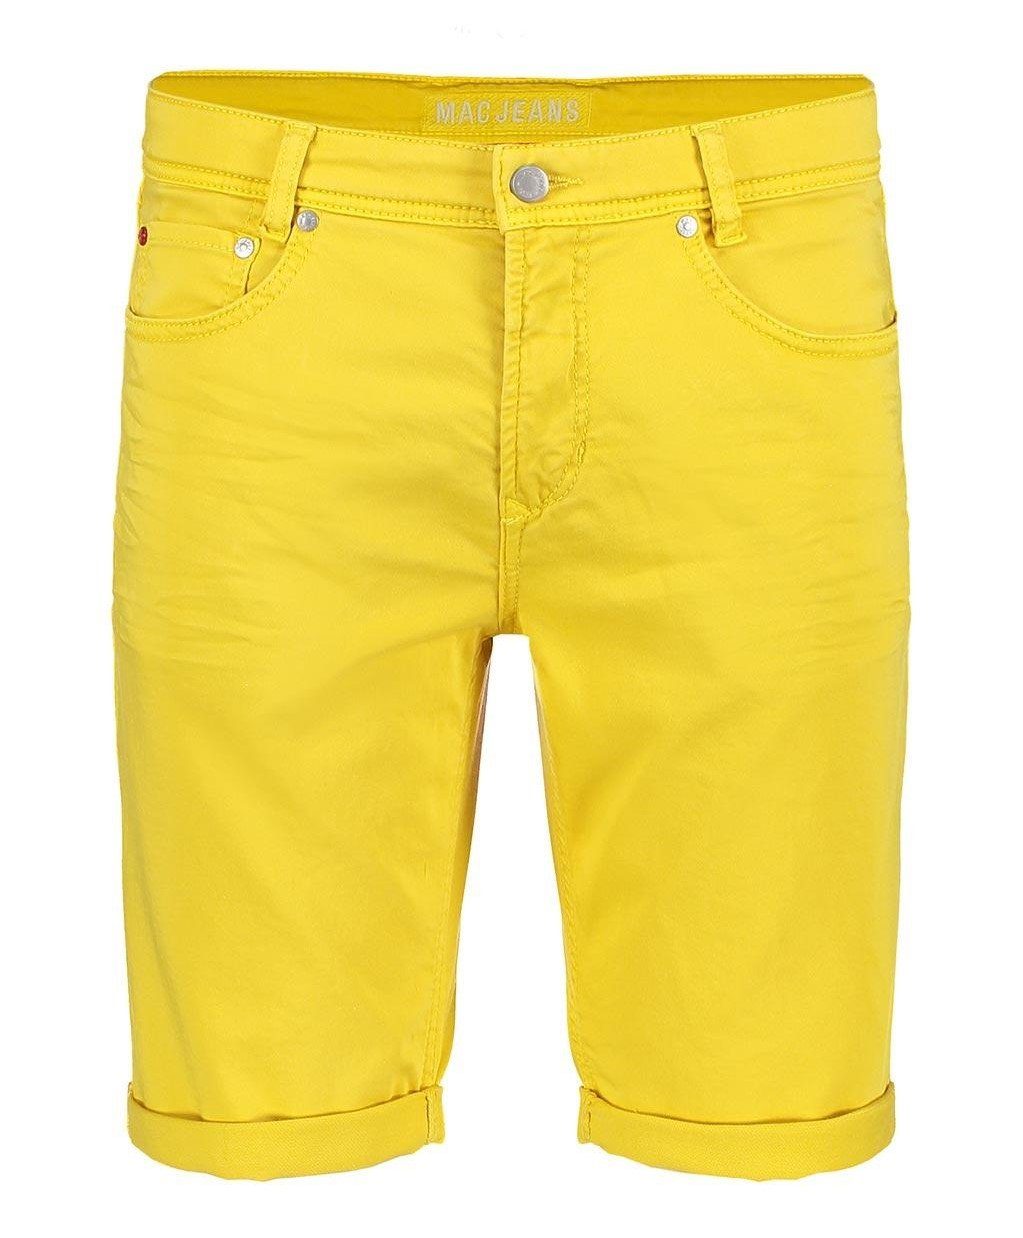 Gelbe Herren Jeans online kaufen | OTTO